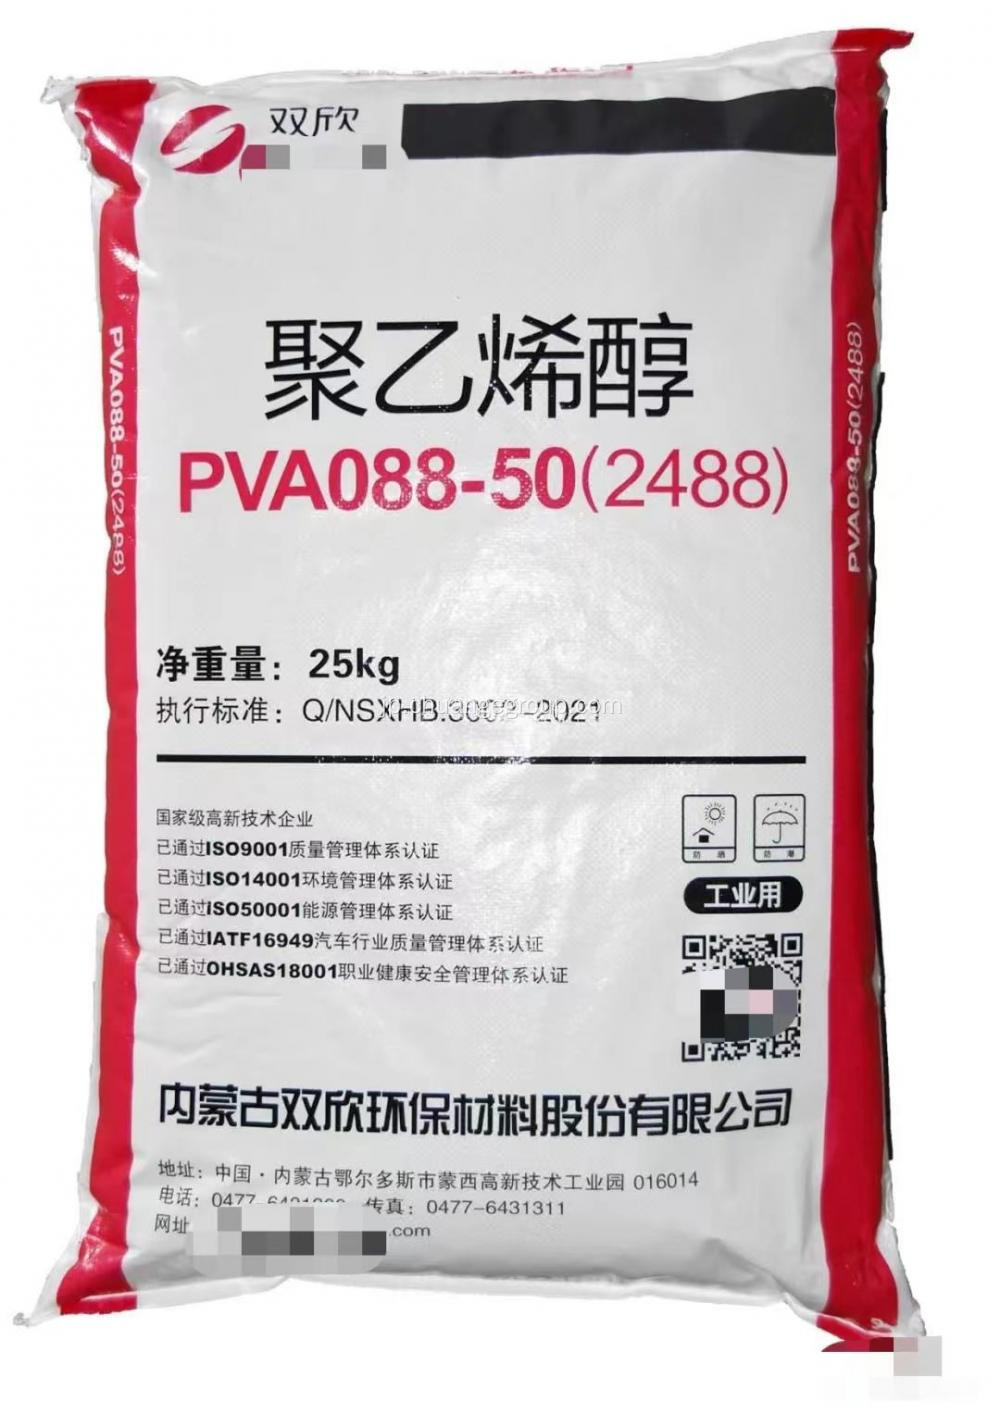 繊維用のシュアンキシンポリビニルアルコールPVA 2488